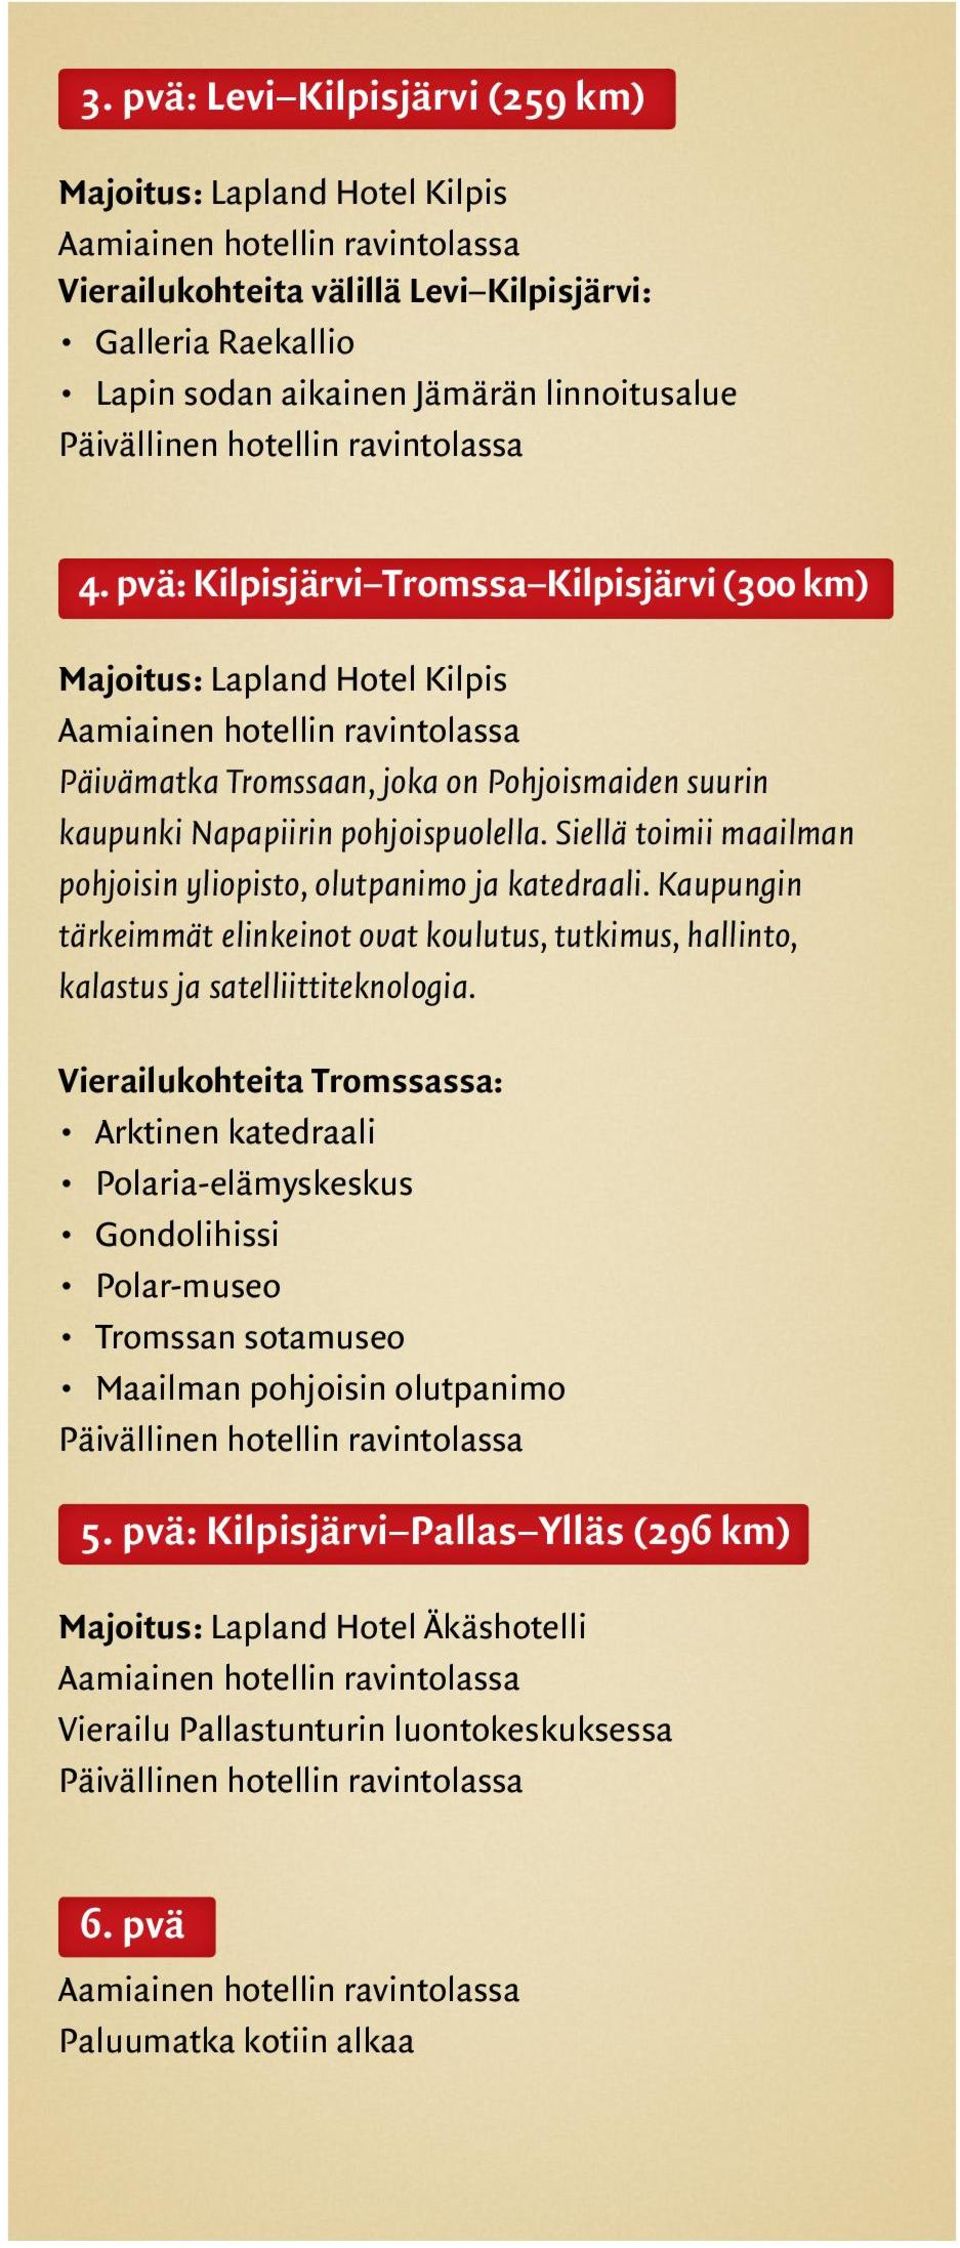 pvä: Kilpisjärvi Tromssa Kilpisjärvi (300 km) Majoitus: Lapland Hotel Kilpis Aamiainen hotellin ravintolassa Päivämatka Tromssaan, joka on Pohjoismaiden suurin kaupunki Napapiirin pohjoispuolella.